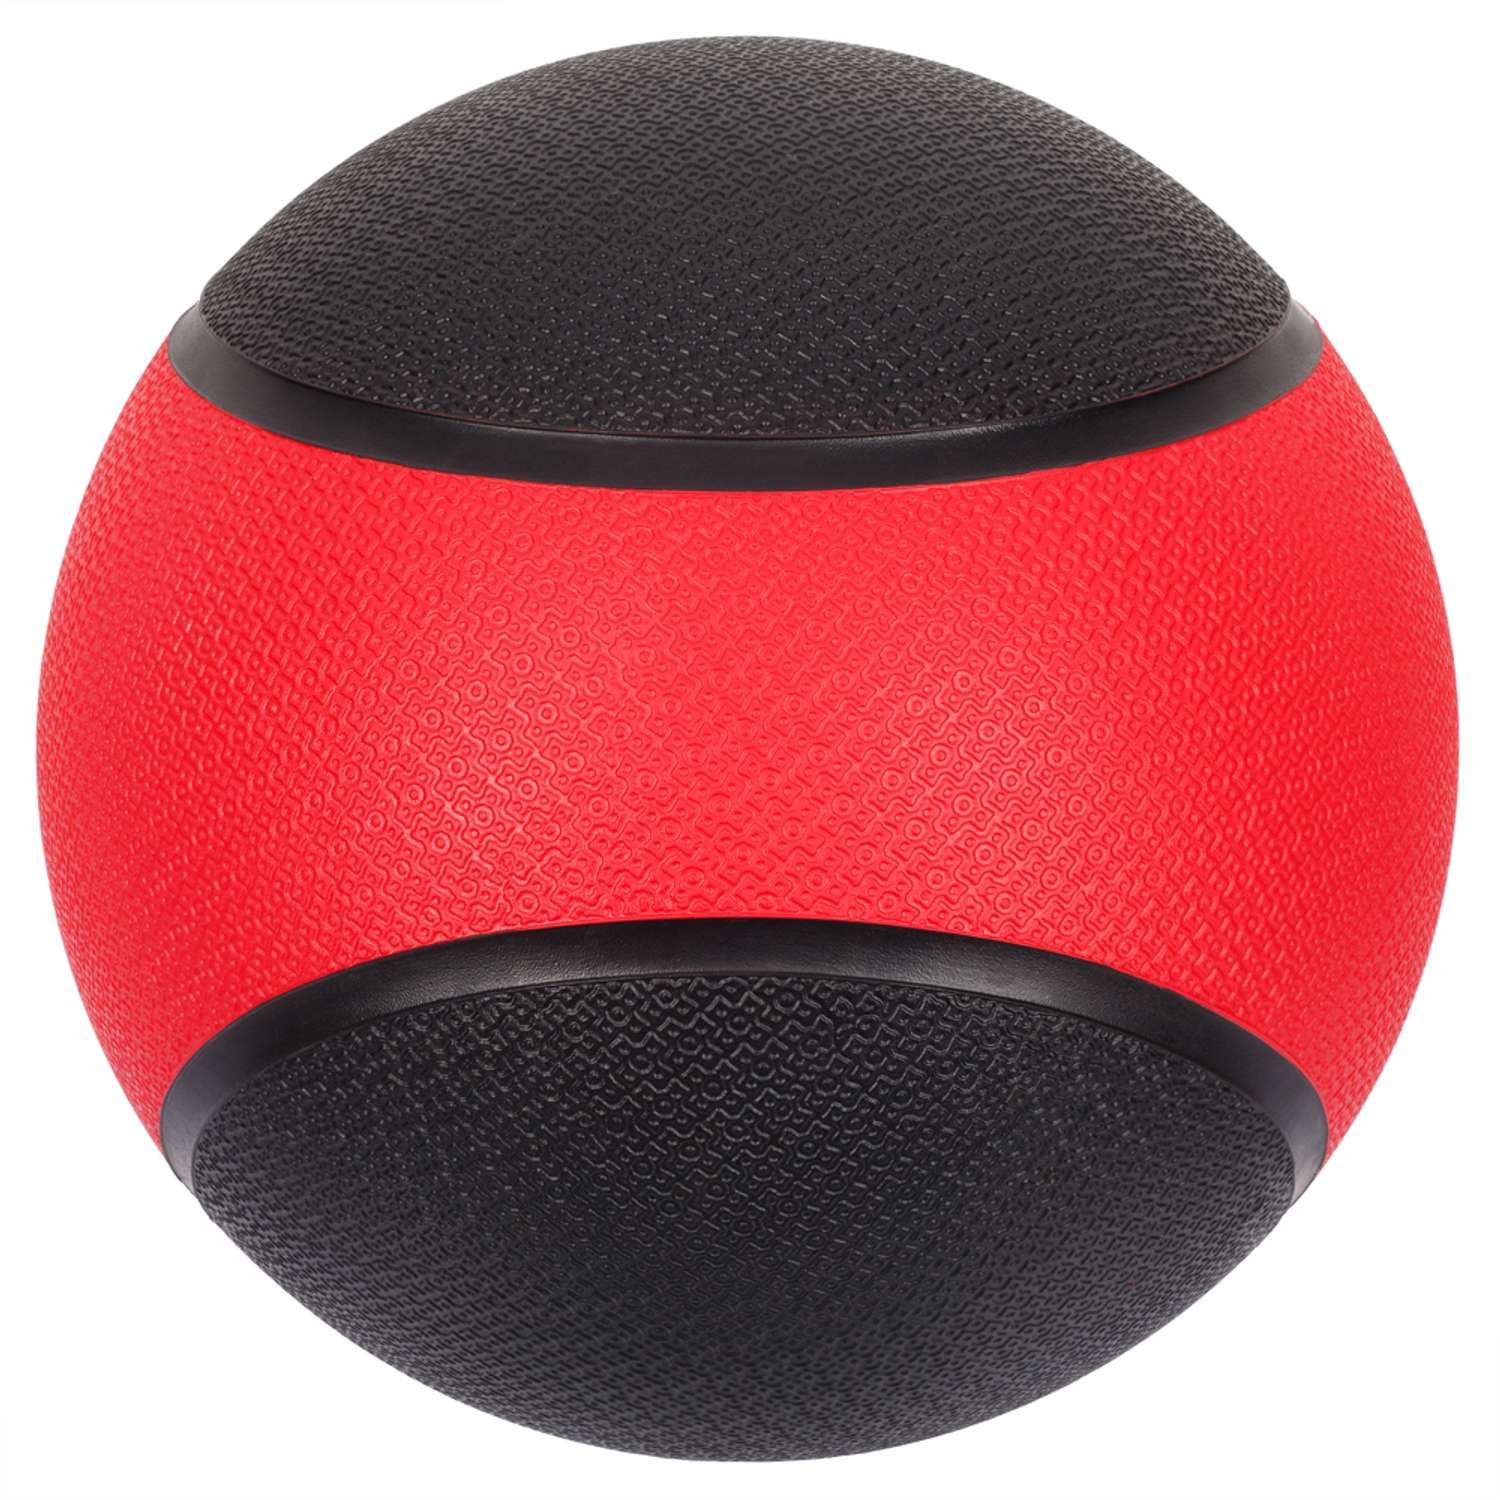 Медбол STRONG BODY медицинский мяч для фитнеса черно-красный 4 кг - фото 4